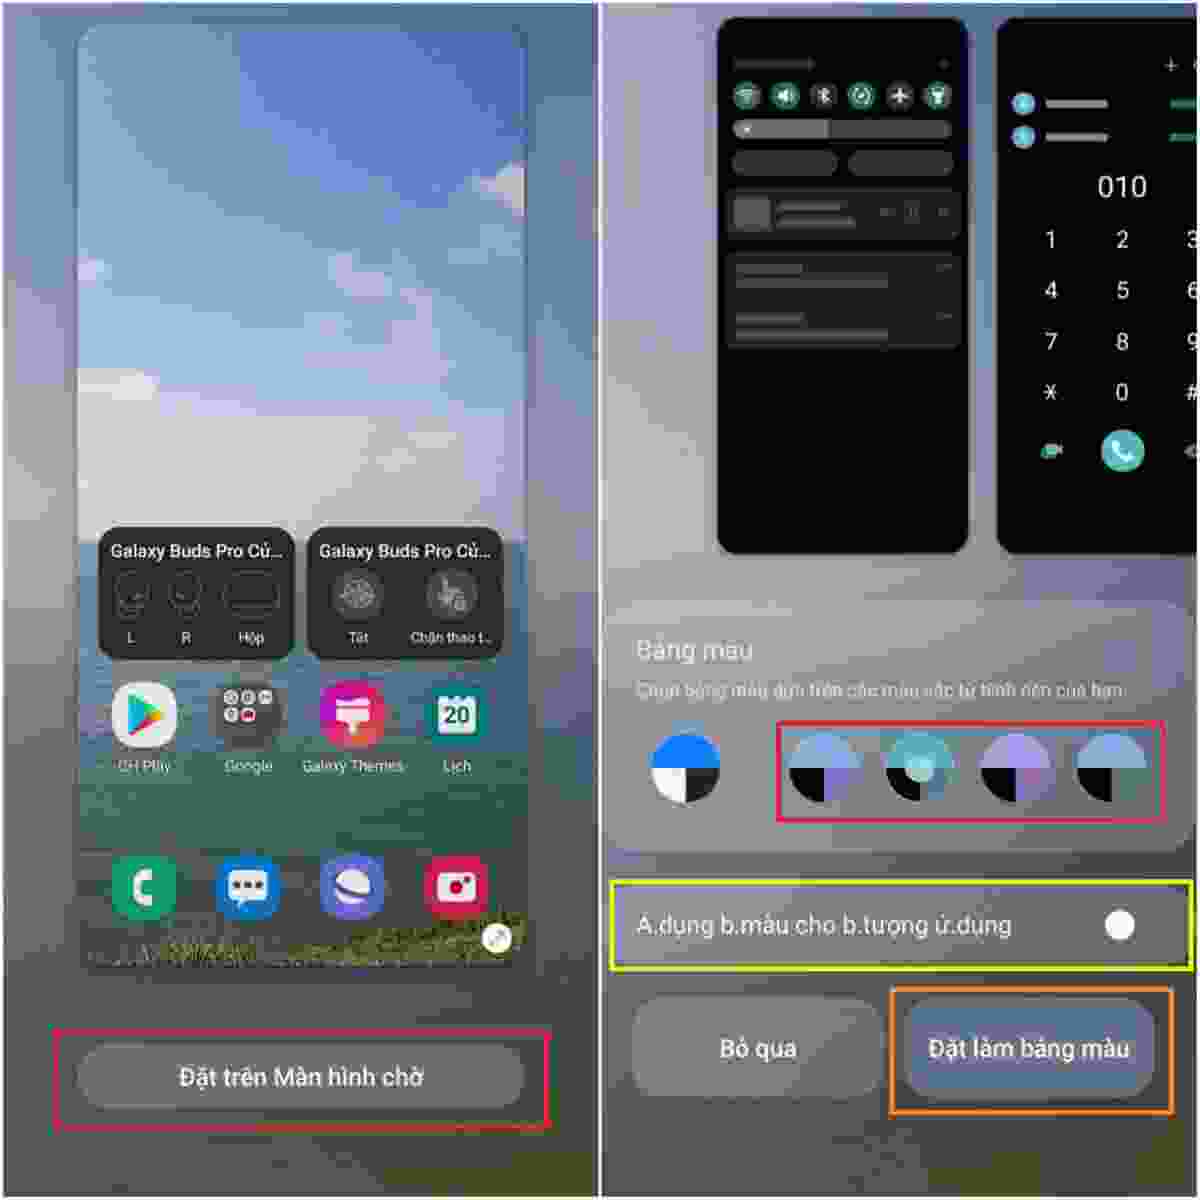 Bạn có biết rằng chỉnh màu hệ thống trên điện thoại của bạn có thể giúp cho hình nền trở nên sống động hơn khi hiển thị trên màn hình chính của thiết bị. Hãy thử ngay và cảm nhận sự khác biệt.